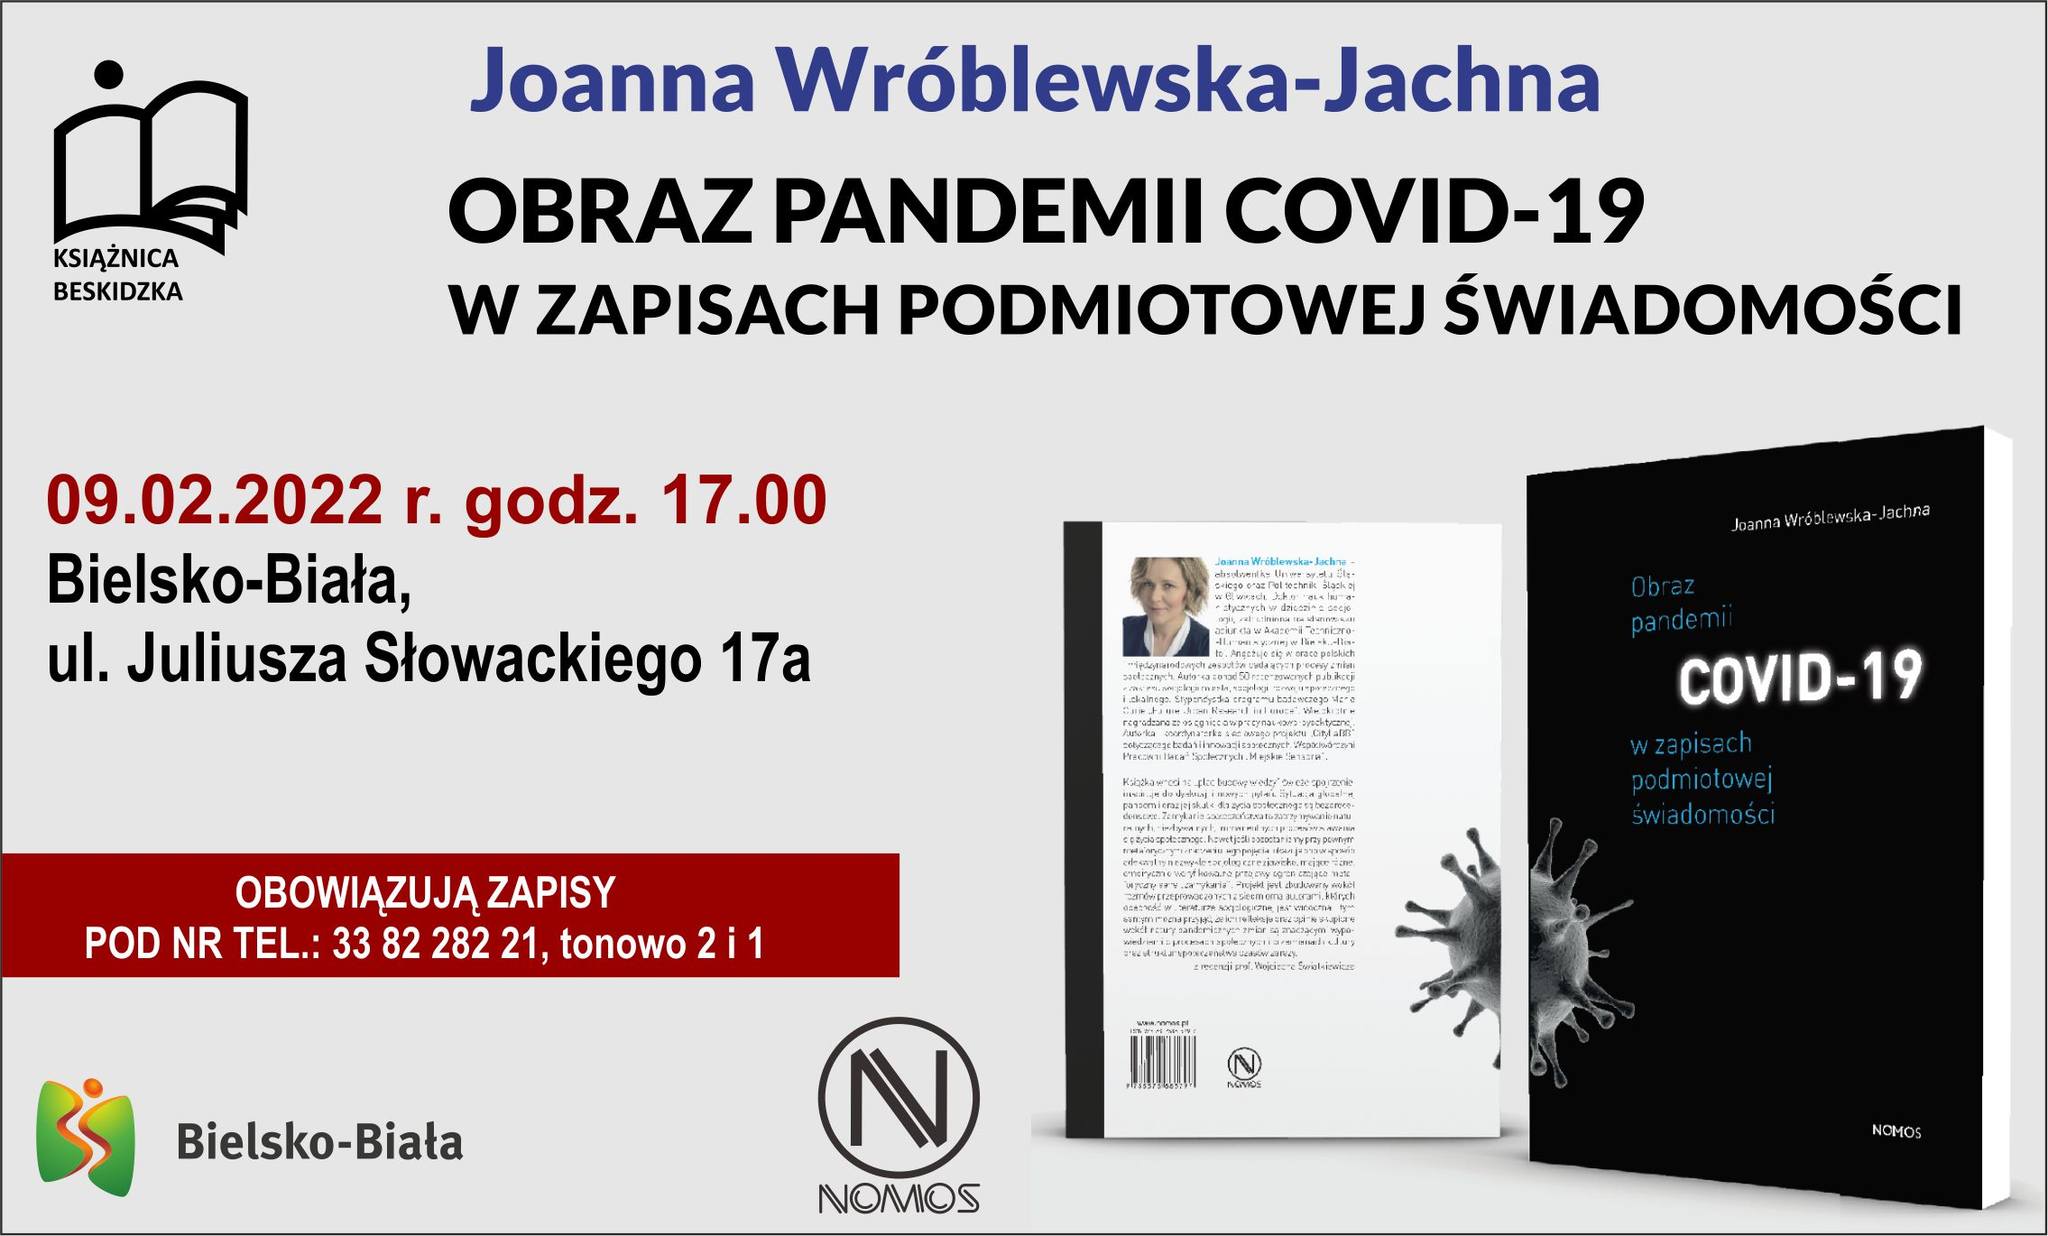  Joanna Wróblewska-Jachna: Obraz pandemii COVID-19 w zapisach podmiotowej świadomości Na zdjęciu plakat spotkania